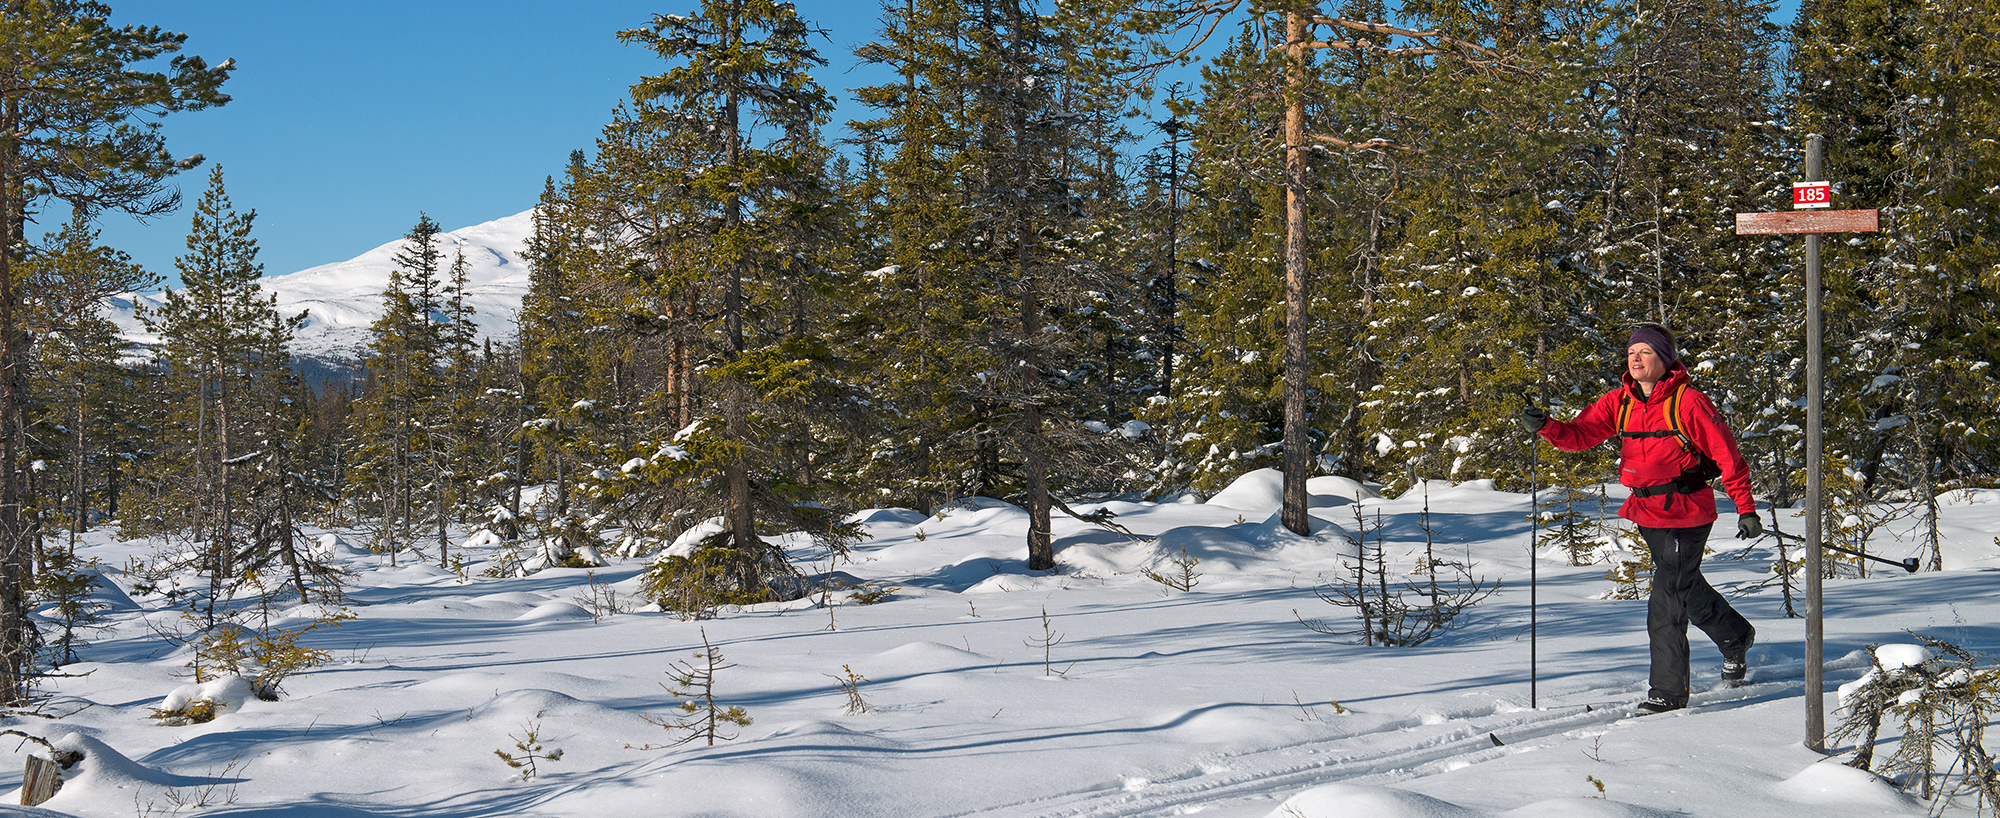 Vallbo milspår är ett av de smala skidspåren i Södra Årefjällen, men likafullt en fjällupplevelse i världsklass.